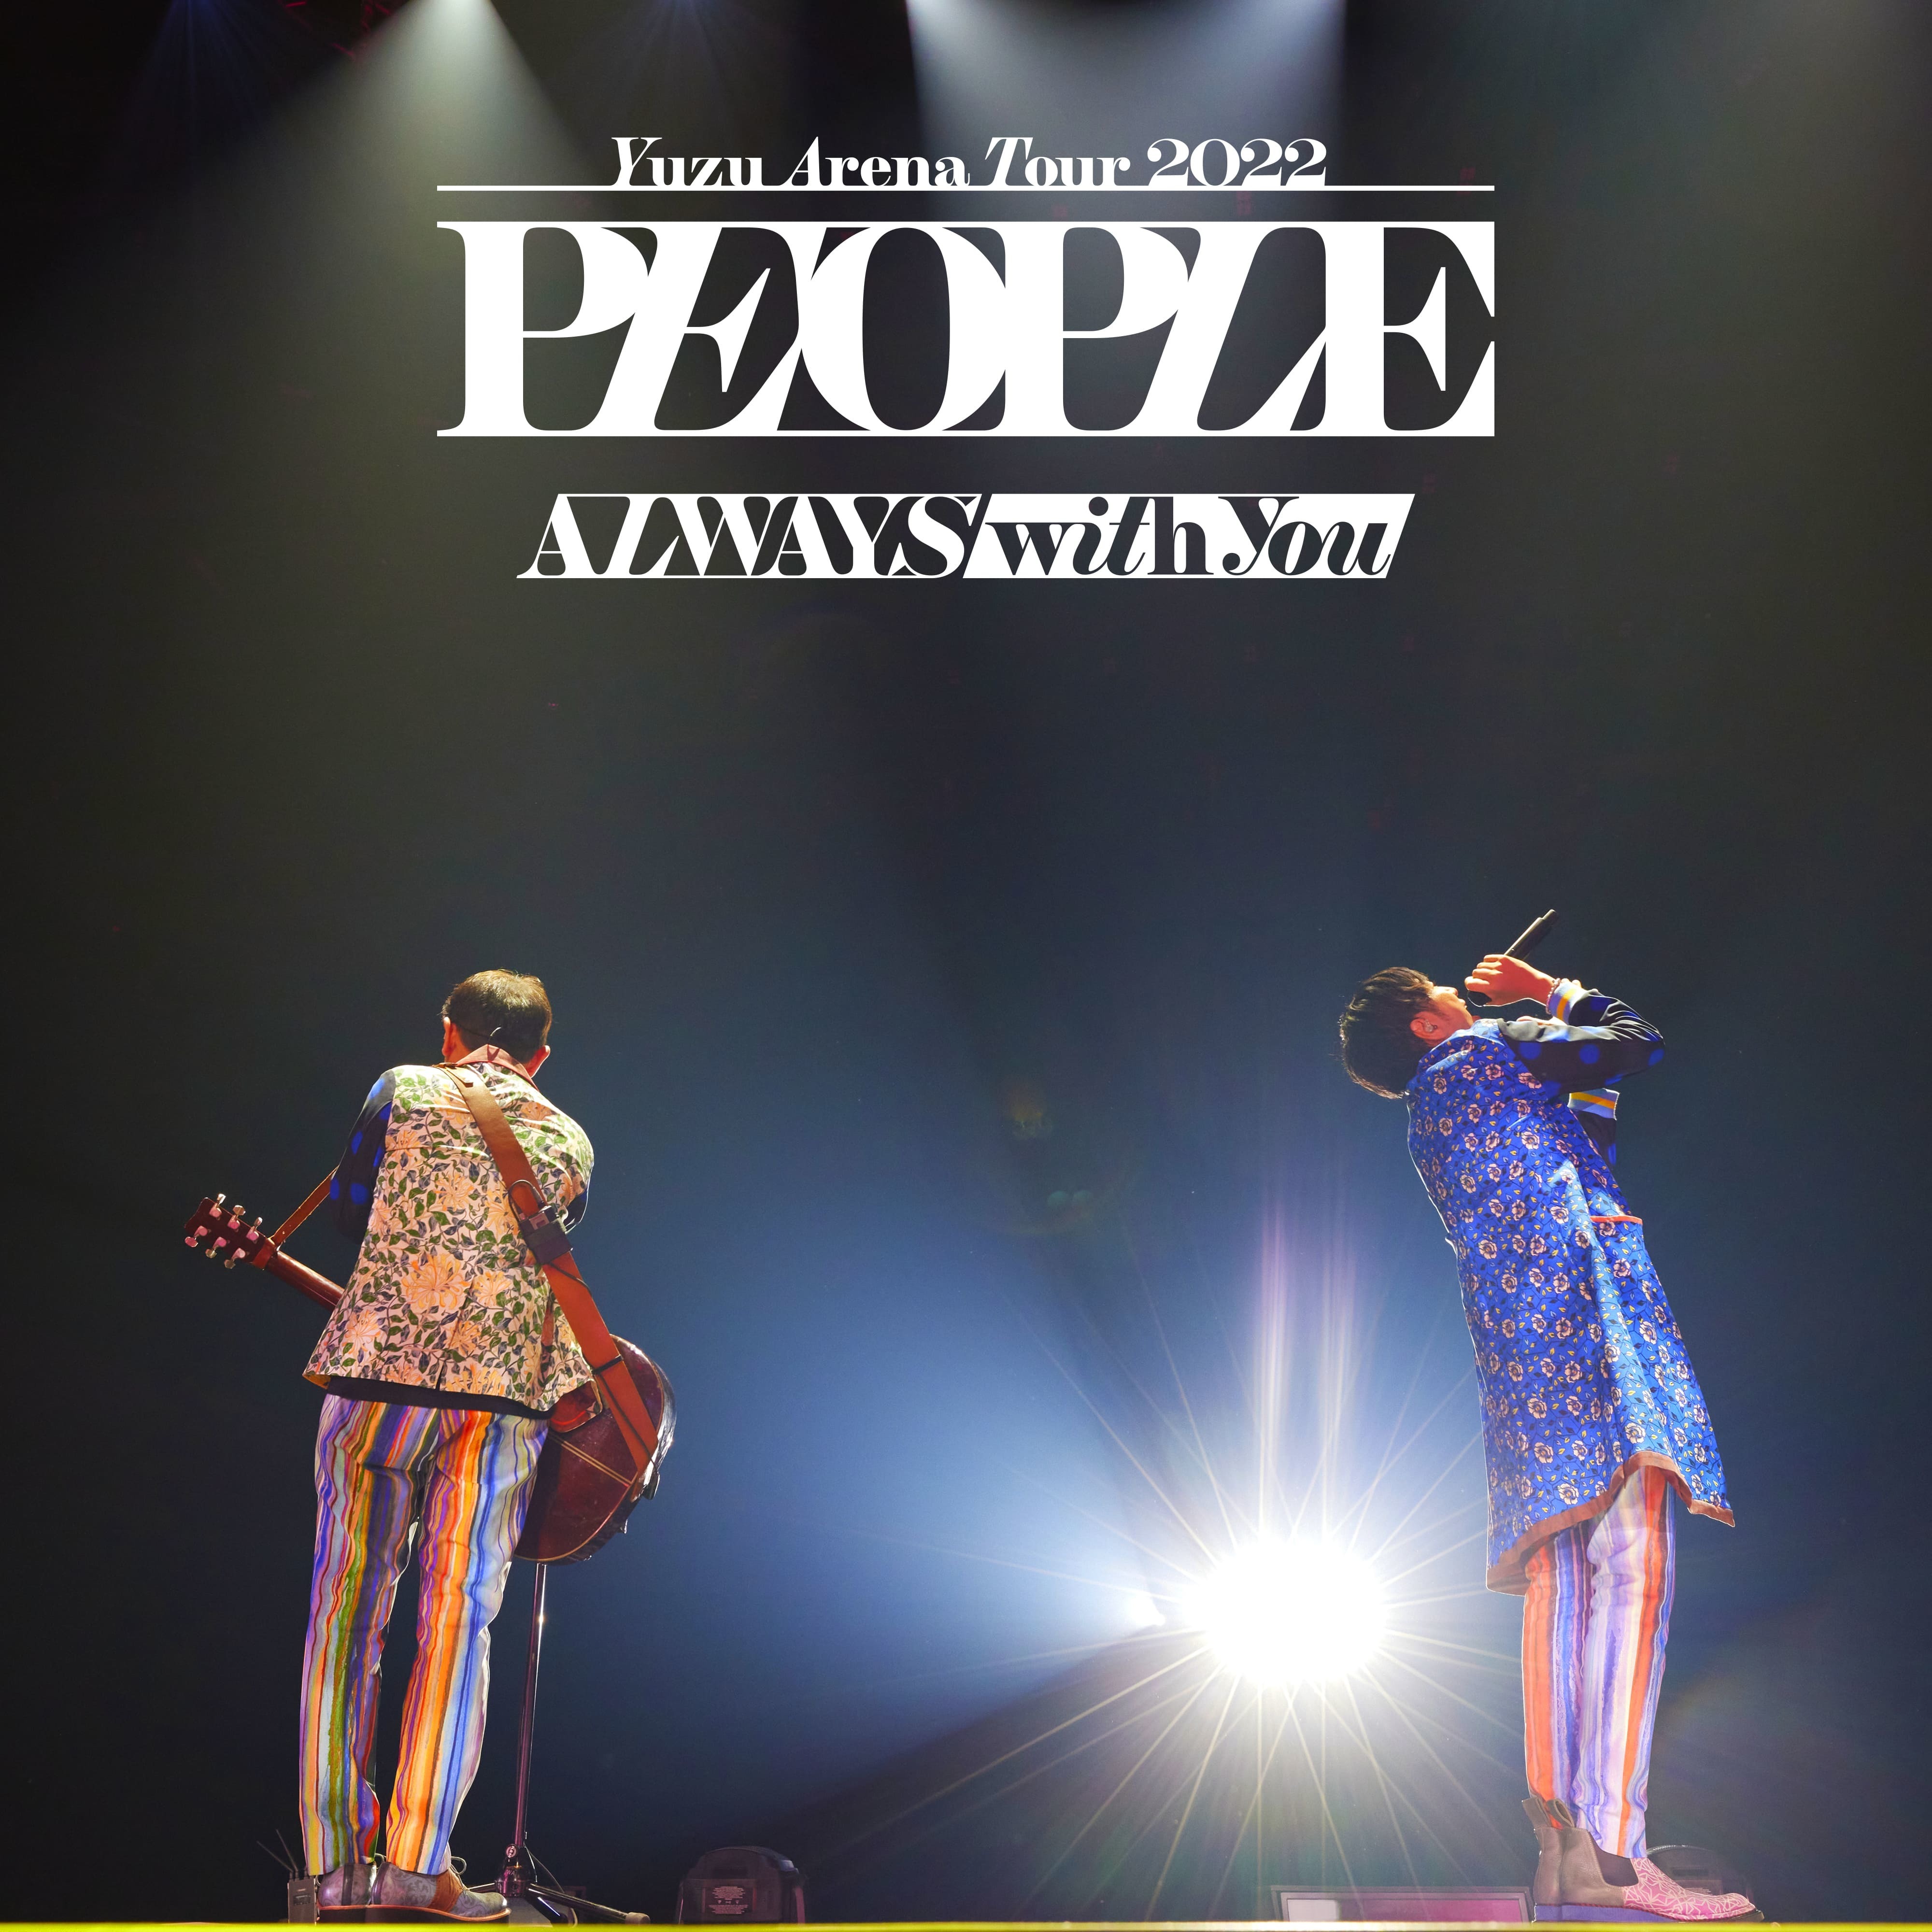 ライブ音源アルバム『YUZU ARENA TOUR 2022 PEOPLE -ALWAYS with you-』